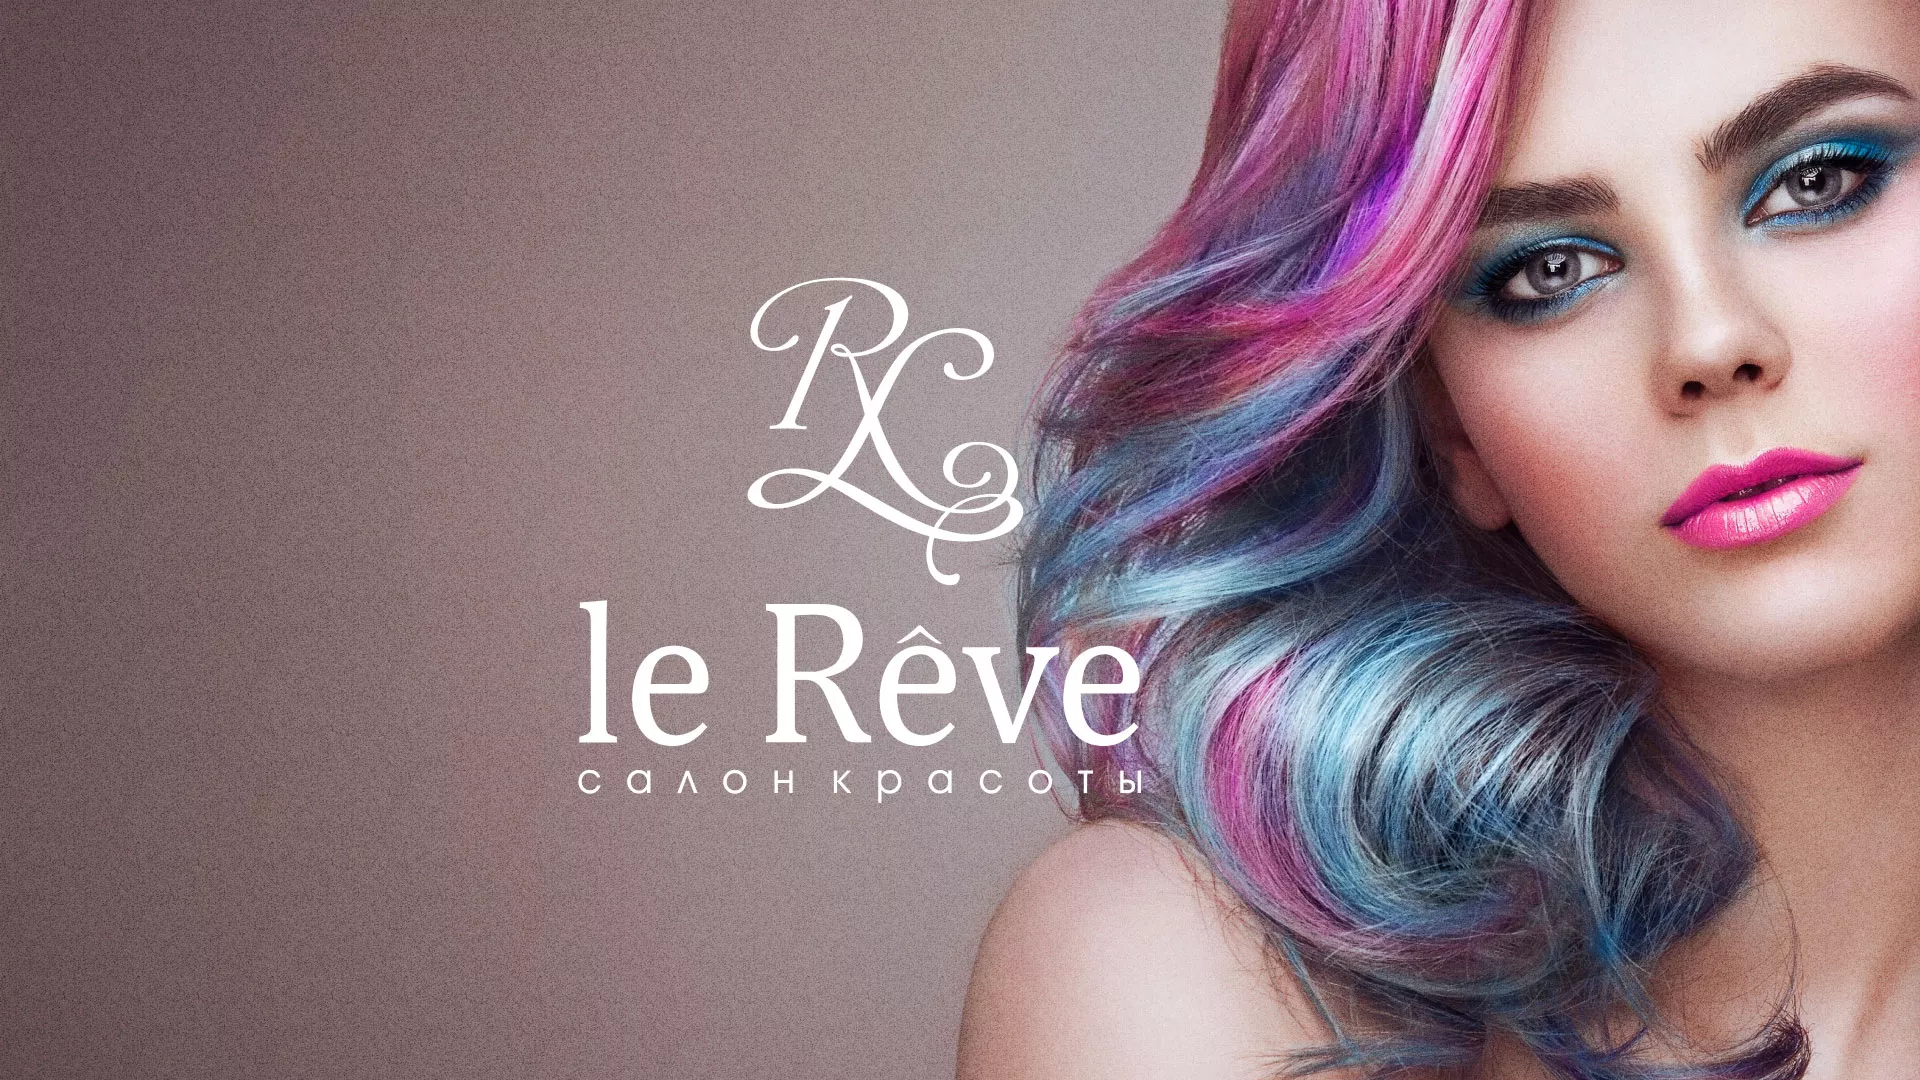 Создание сайта для салона красоты «Le Reve» в Себеже